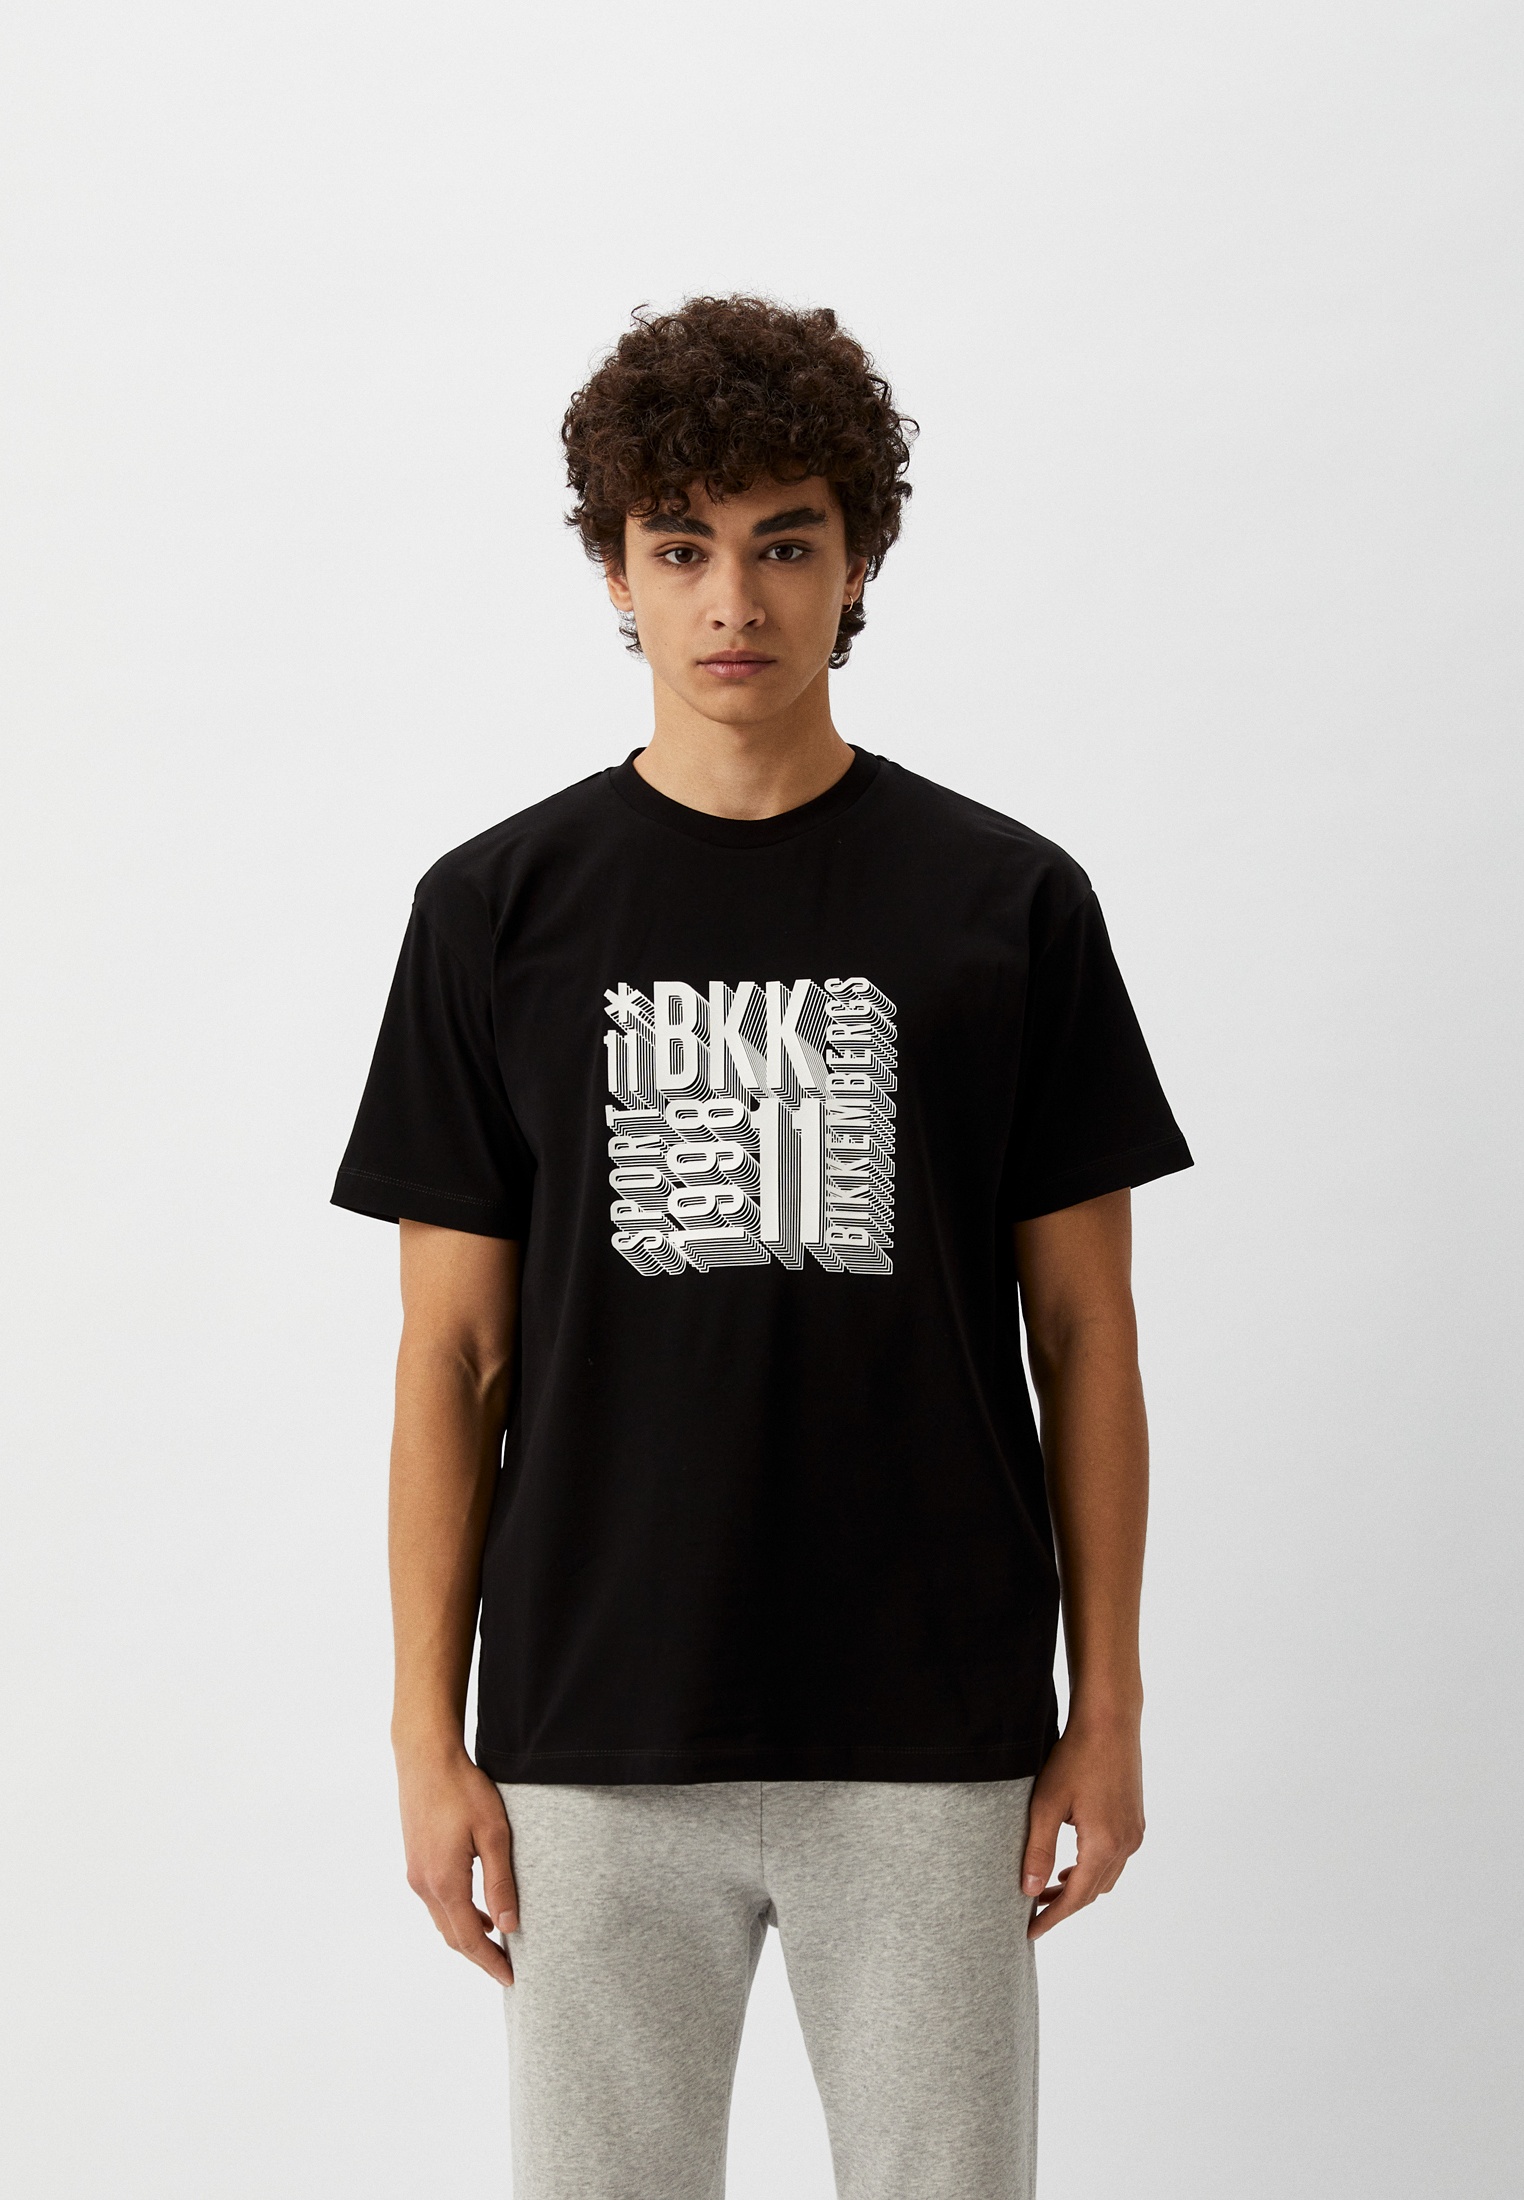 Мужская футболка Bikkembergs (Биккембергс) C 4 114 05 E 2296: изображение 5